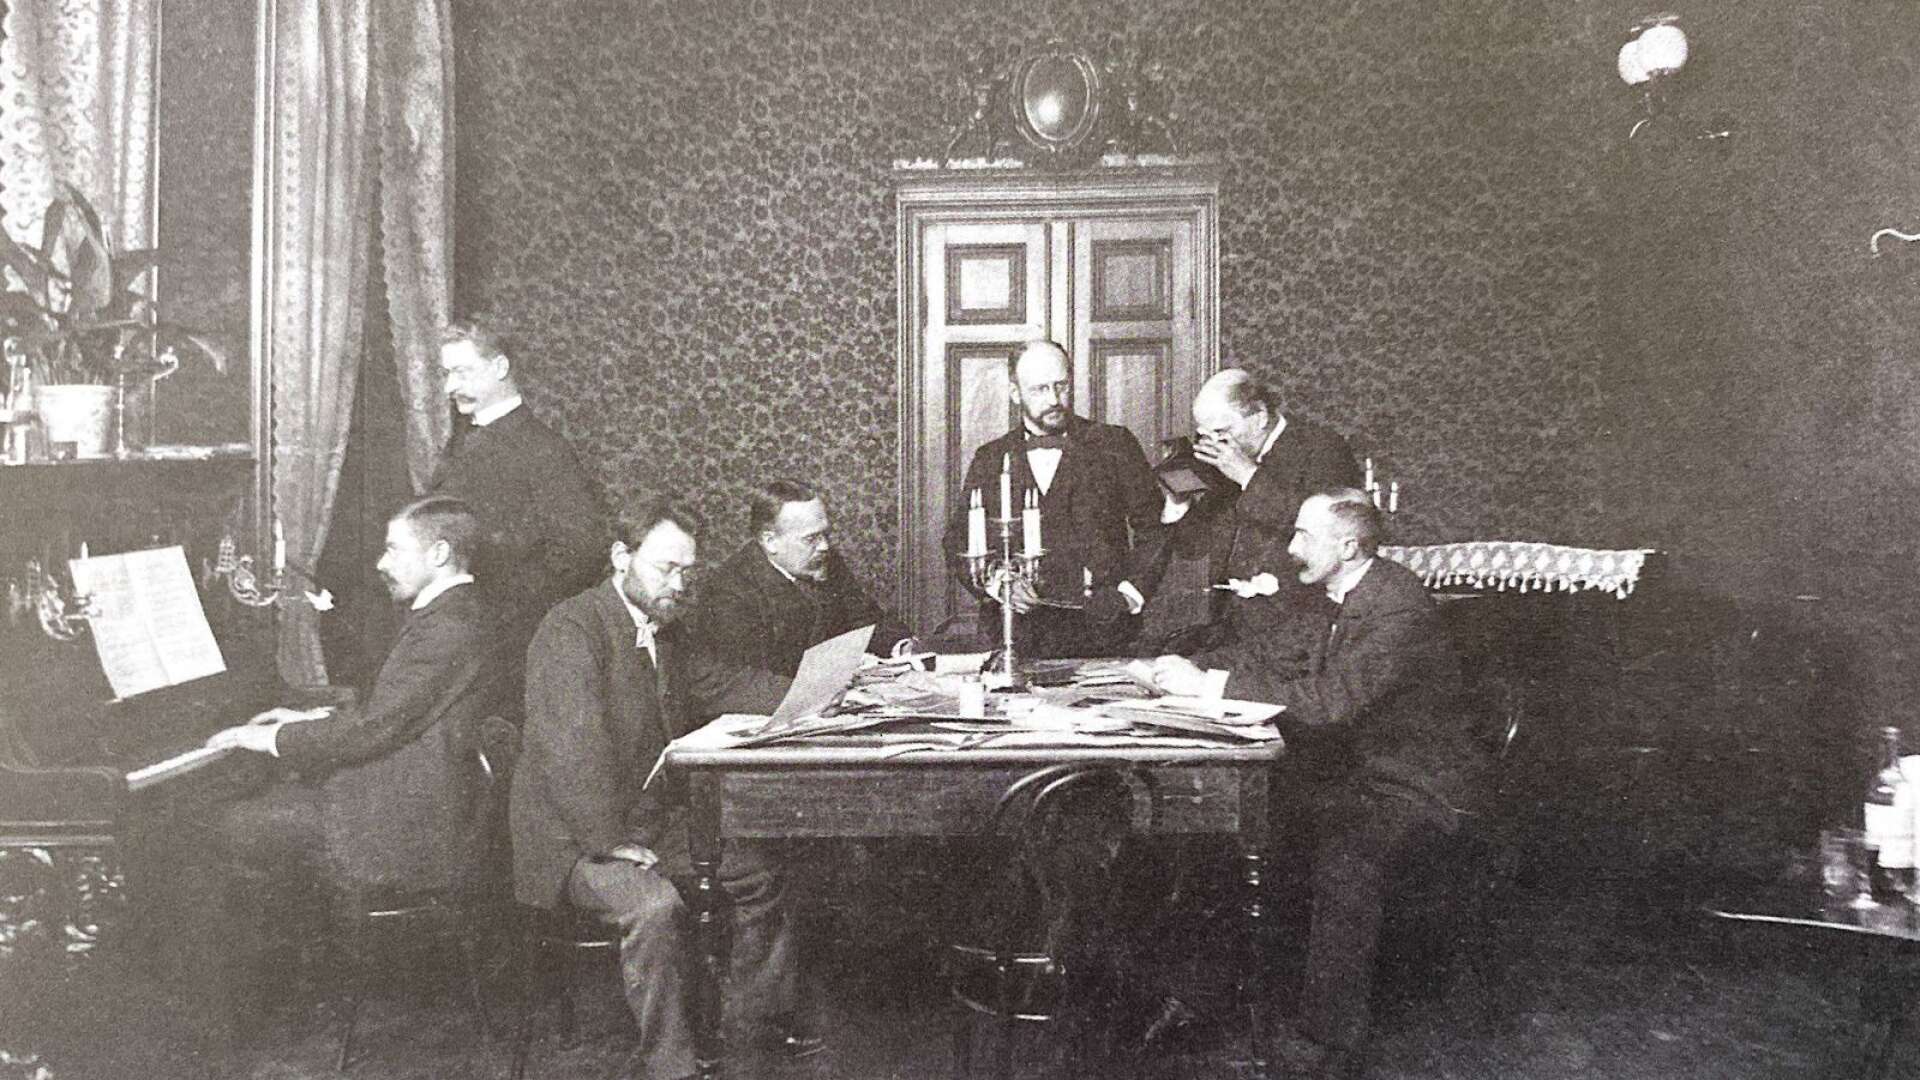 Svenska fotografernas förbunds föregångare. Fotografiska klubben sammanträder i Sveasalen i Stockholm 1894. Längst till höger syns Ernest Florman och direkt till vänster om honom Gösta Florman.